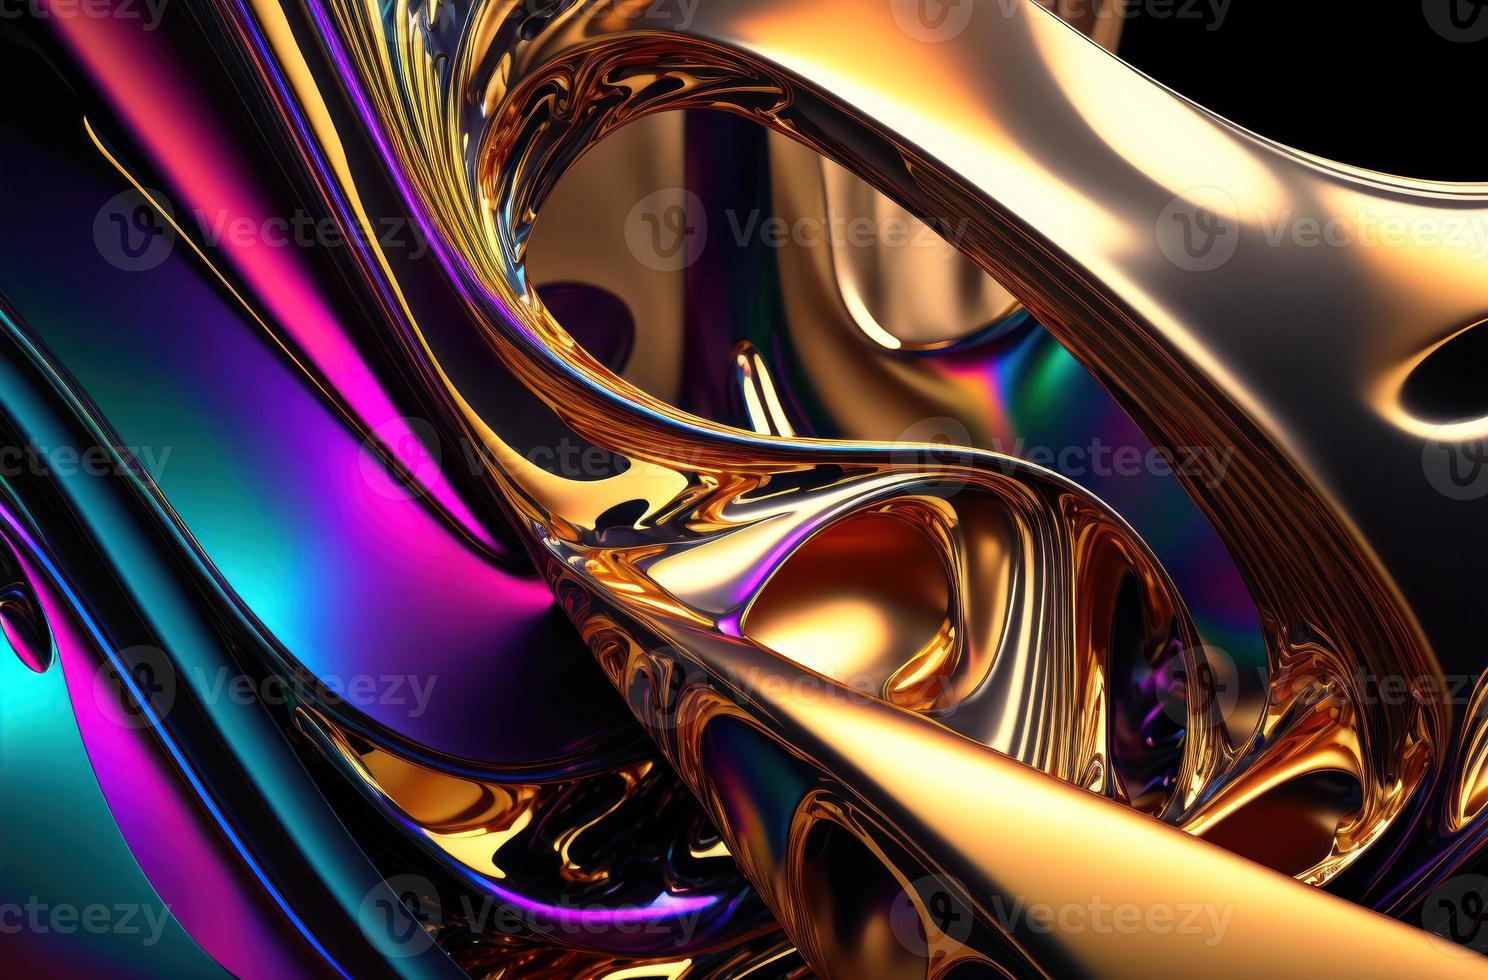 psychische Wellen mutiger metallischer Farbton abstrakter Hintergrund foto